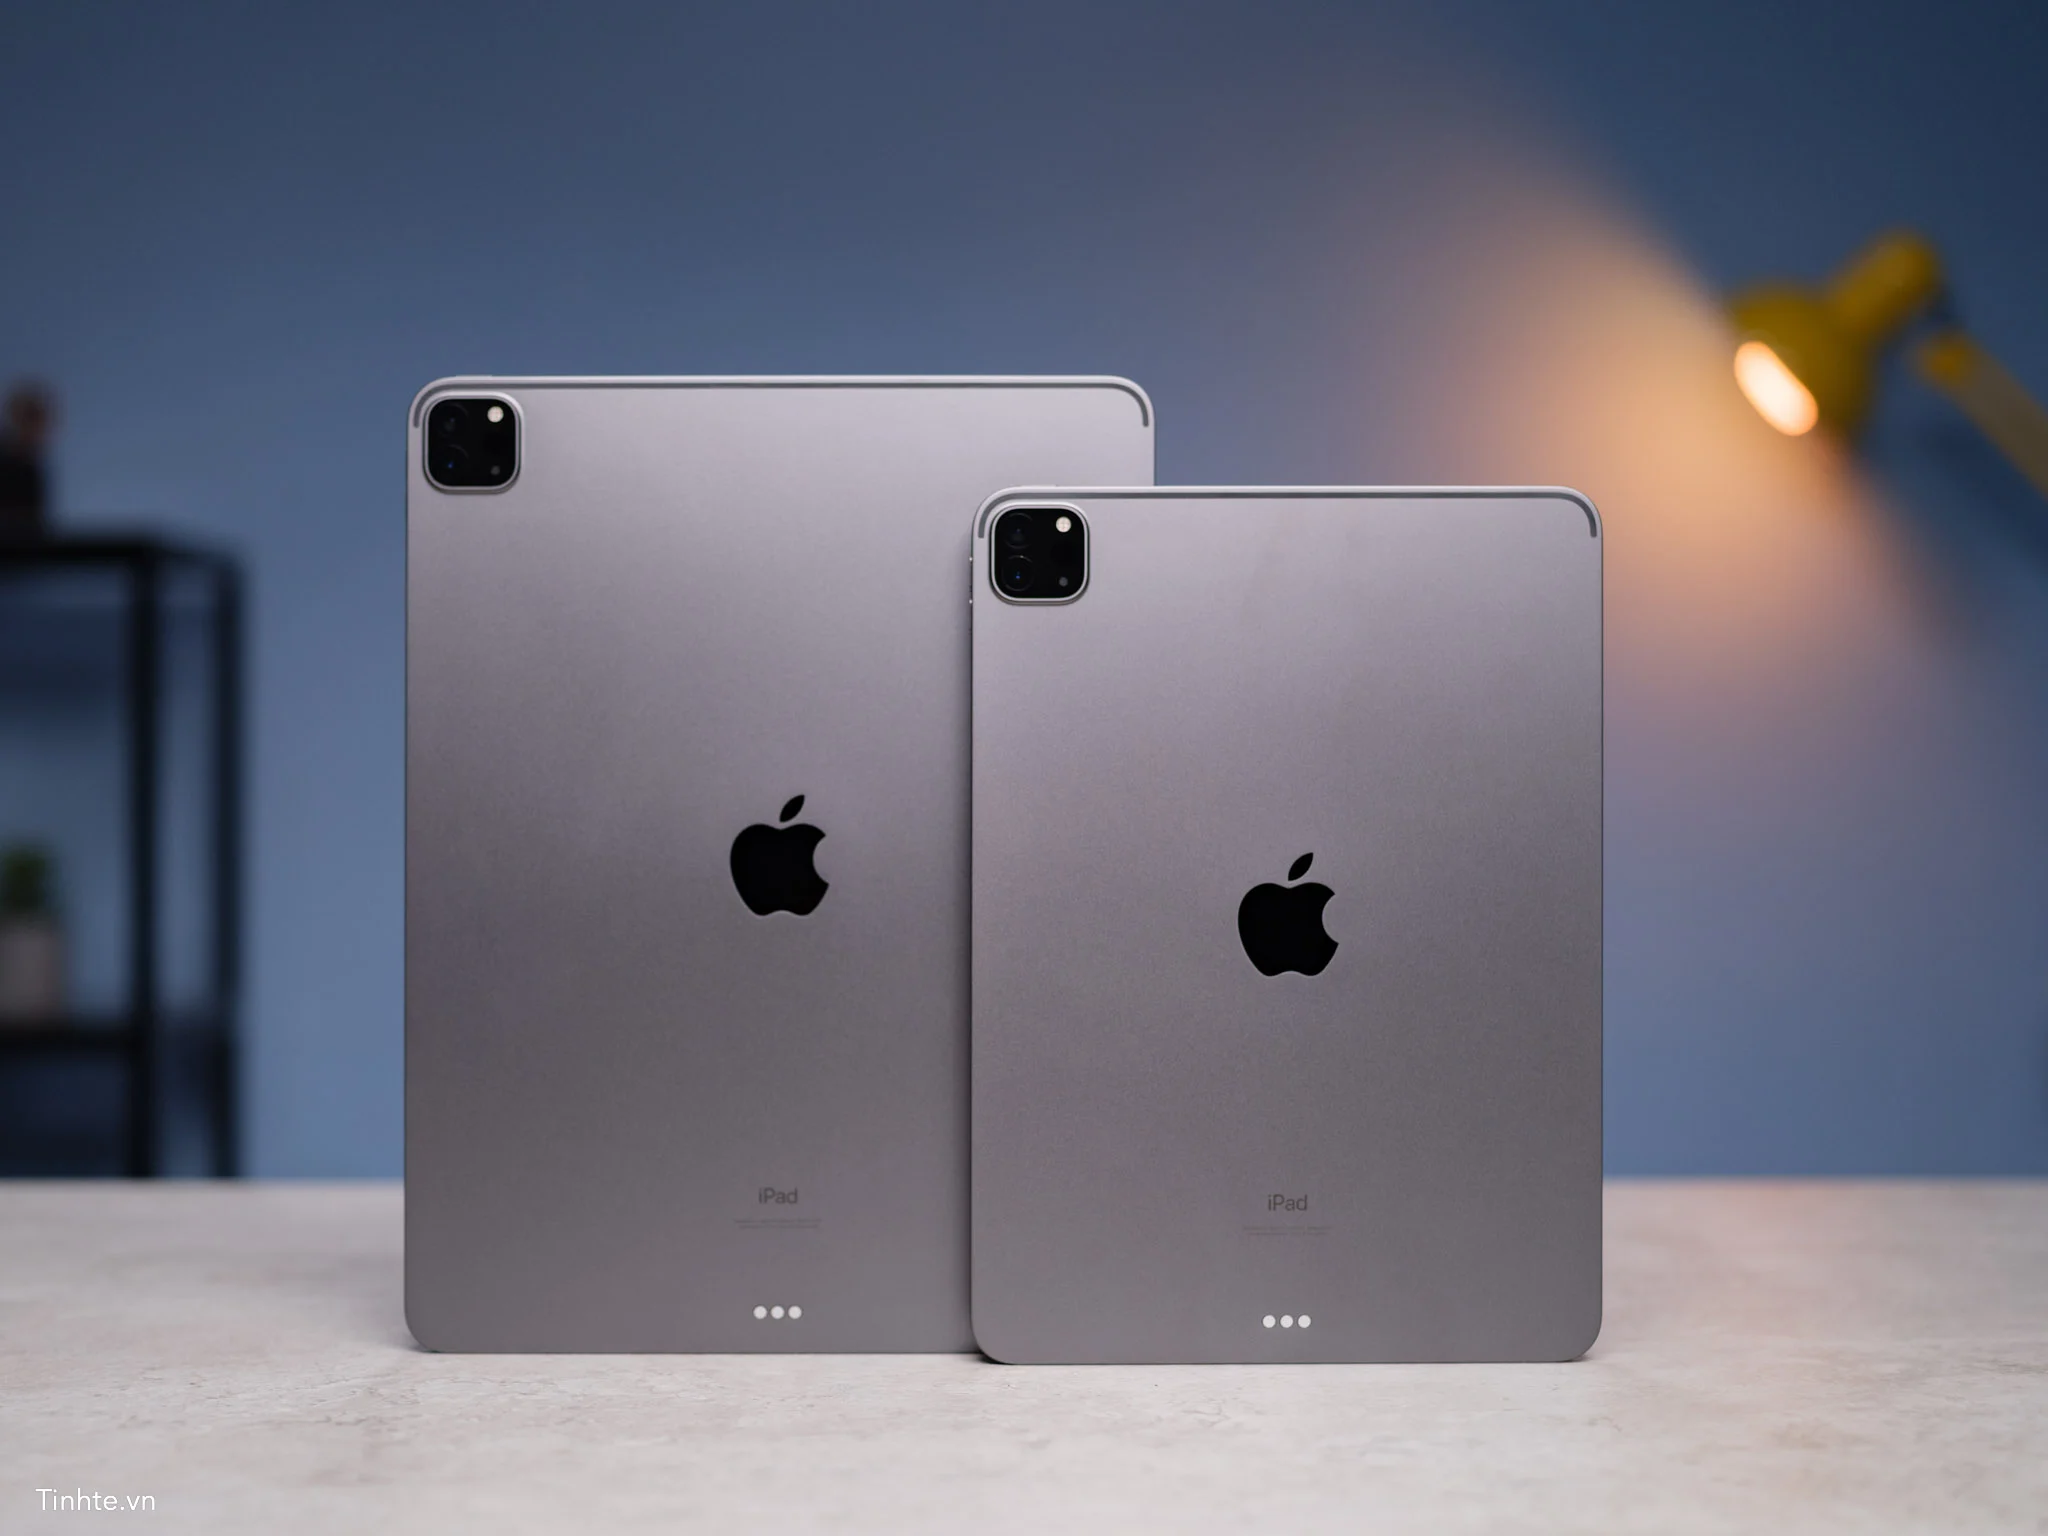 Apple sẽ cập nhật lớn cho iPad trong năm tới